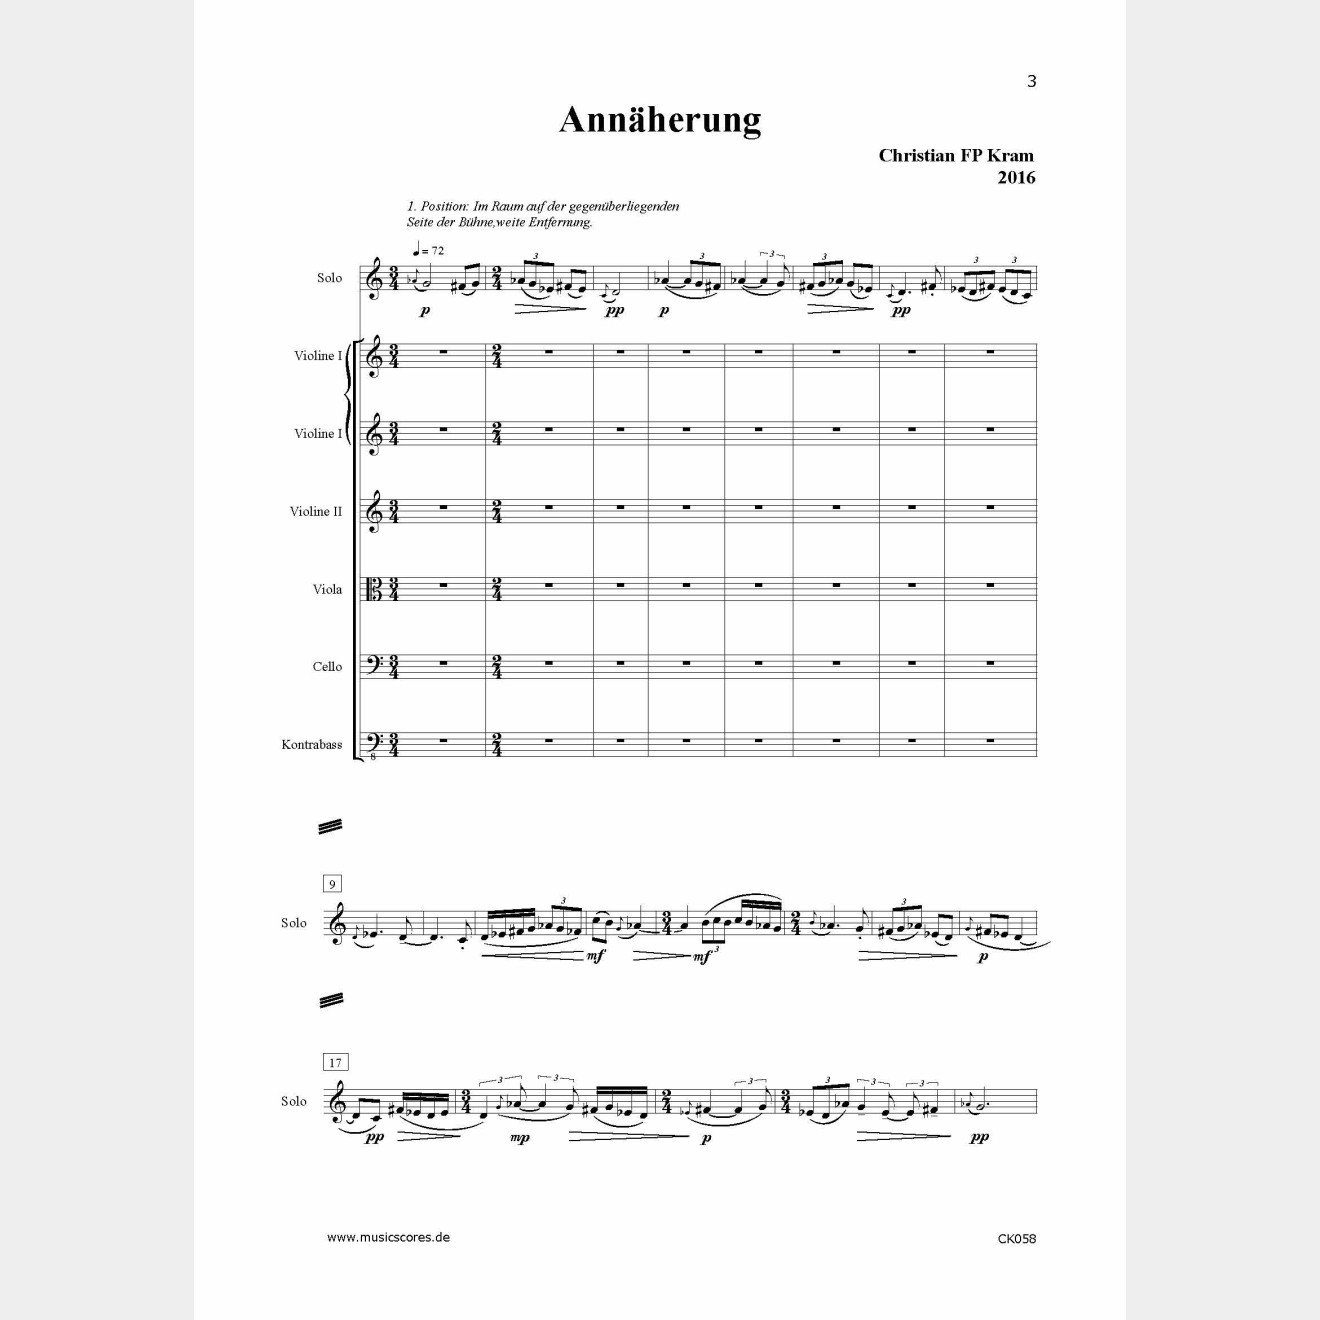 Ostinati - 2 Stücke für Marimba; Wechselspiel mit B-A-C-H; Akzente